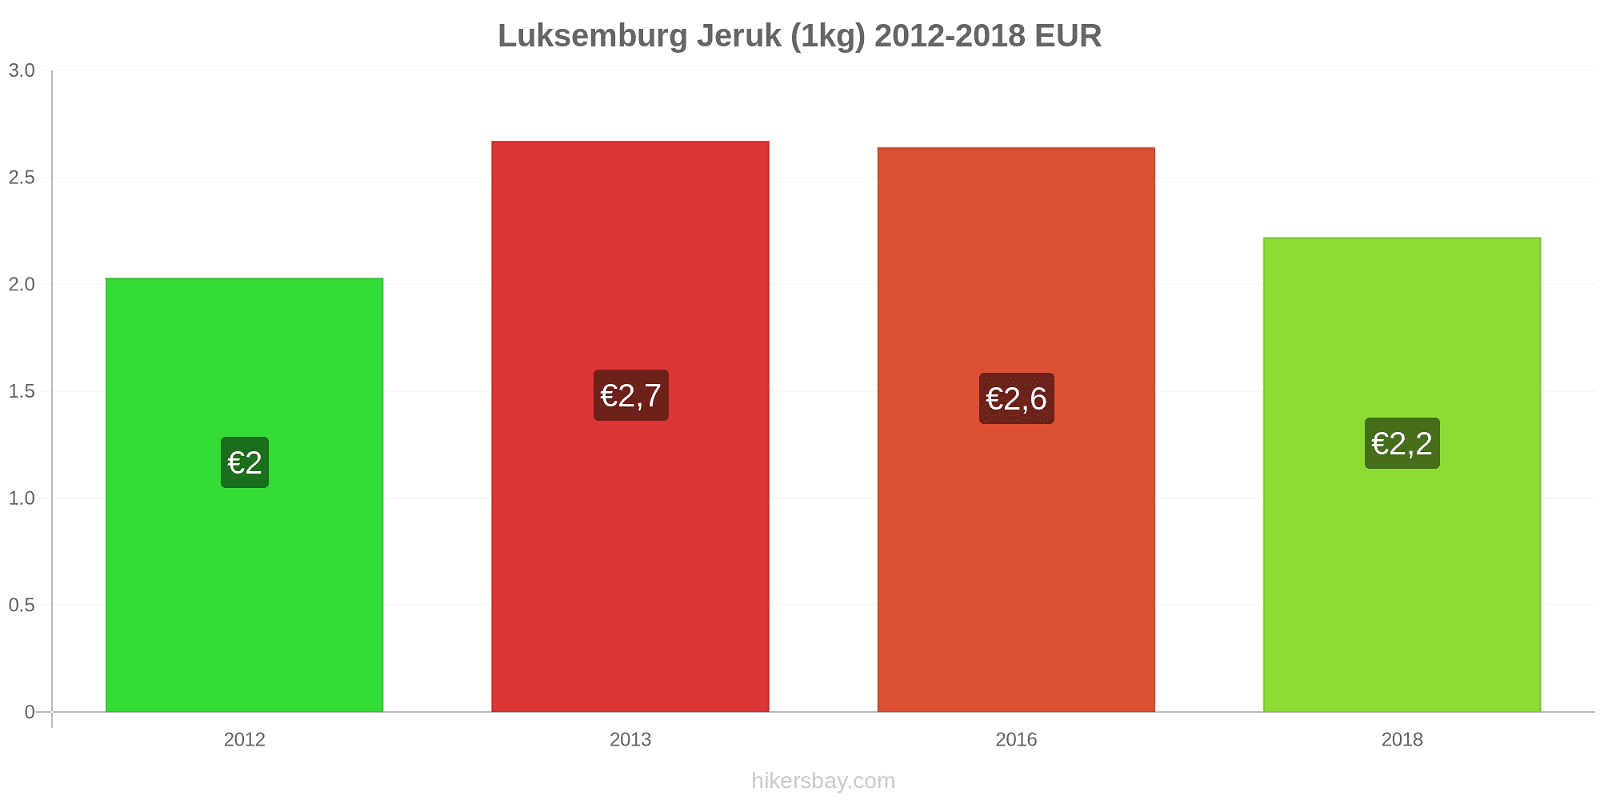 Luksemburg perubahan harga Jeruk (1kg) hikersbay.com